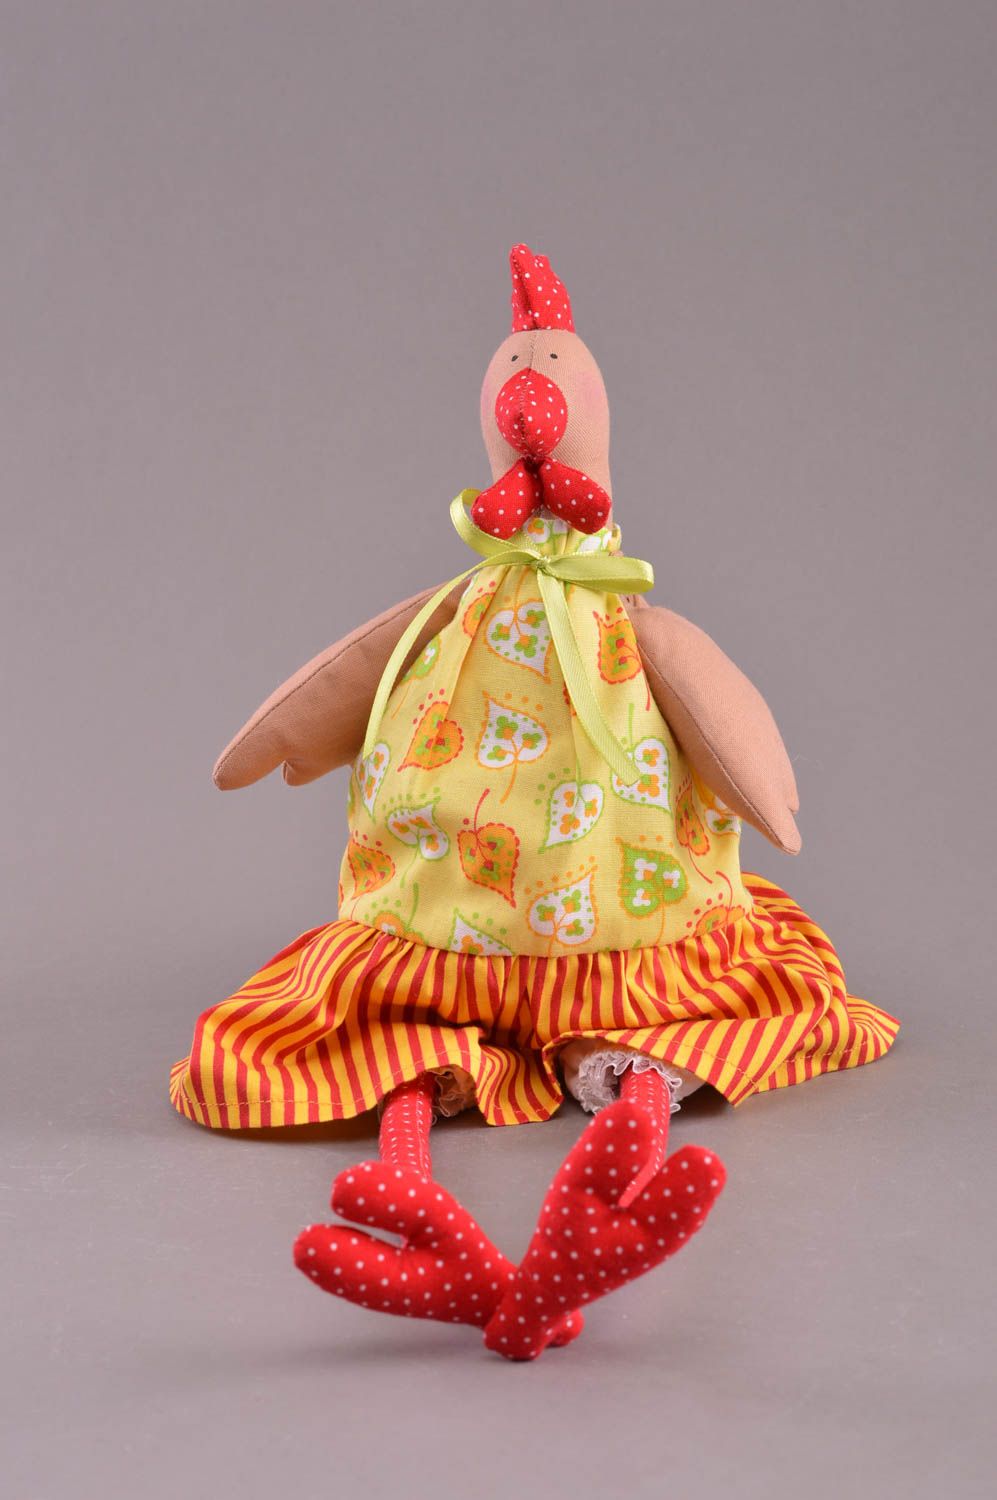 Textil Kuscheltier Huhn im gelben Kleid weich bunt handmade Spielzeug für Kinder foto 1